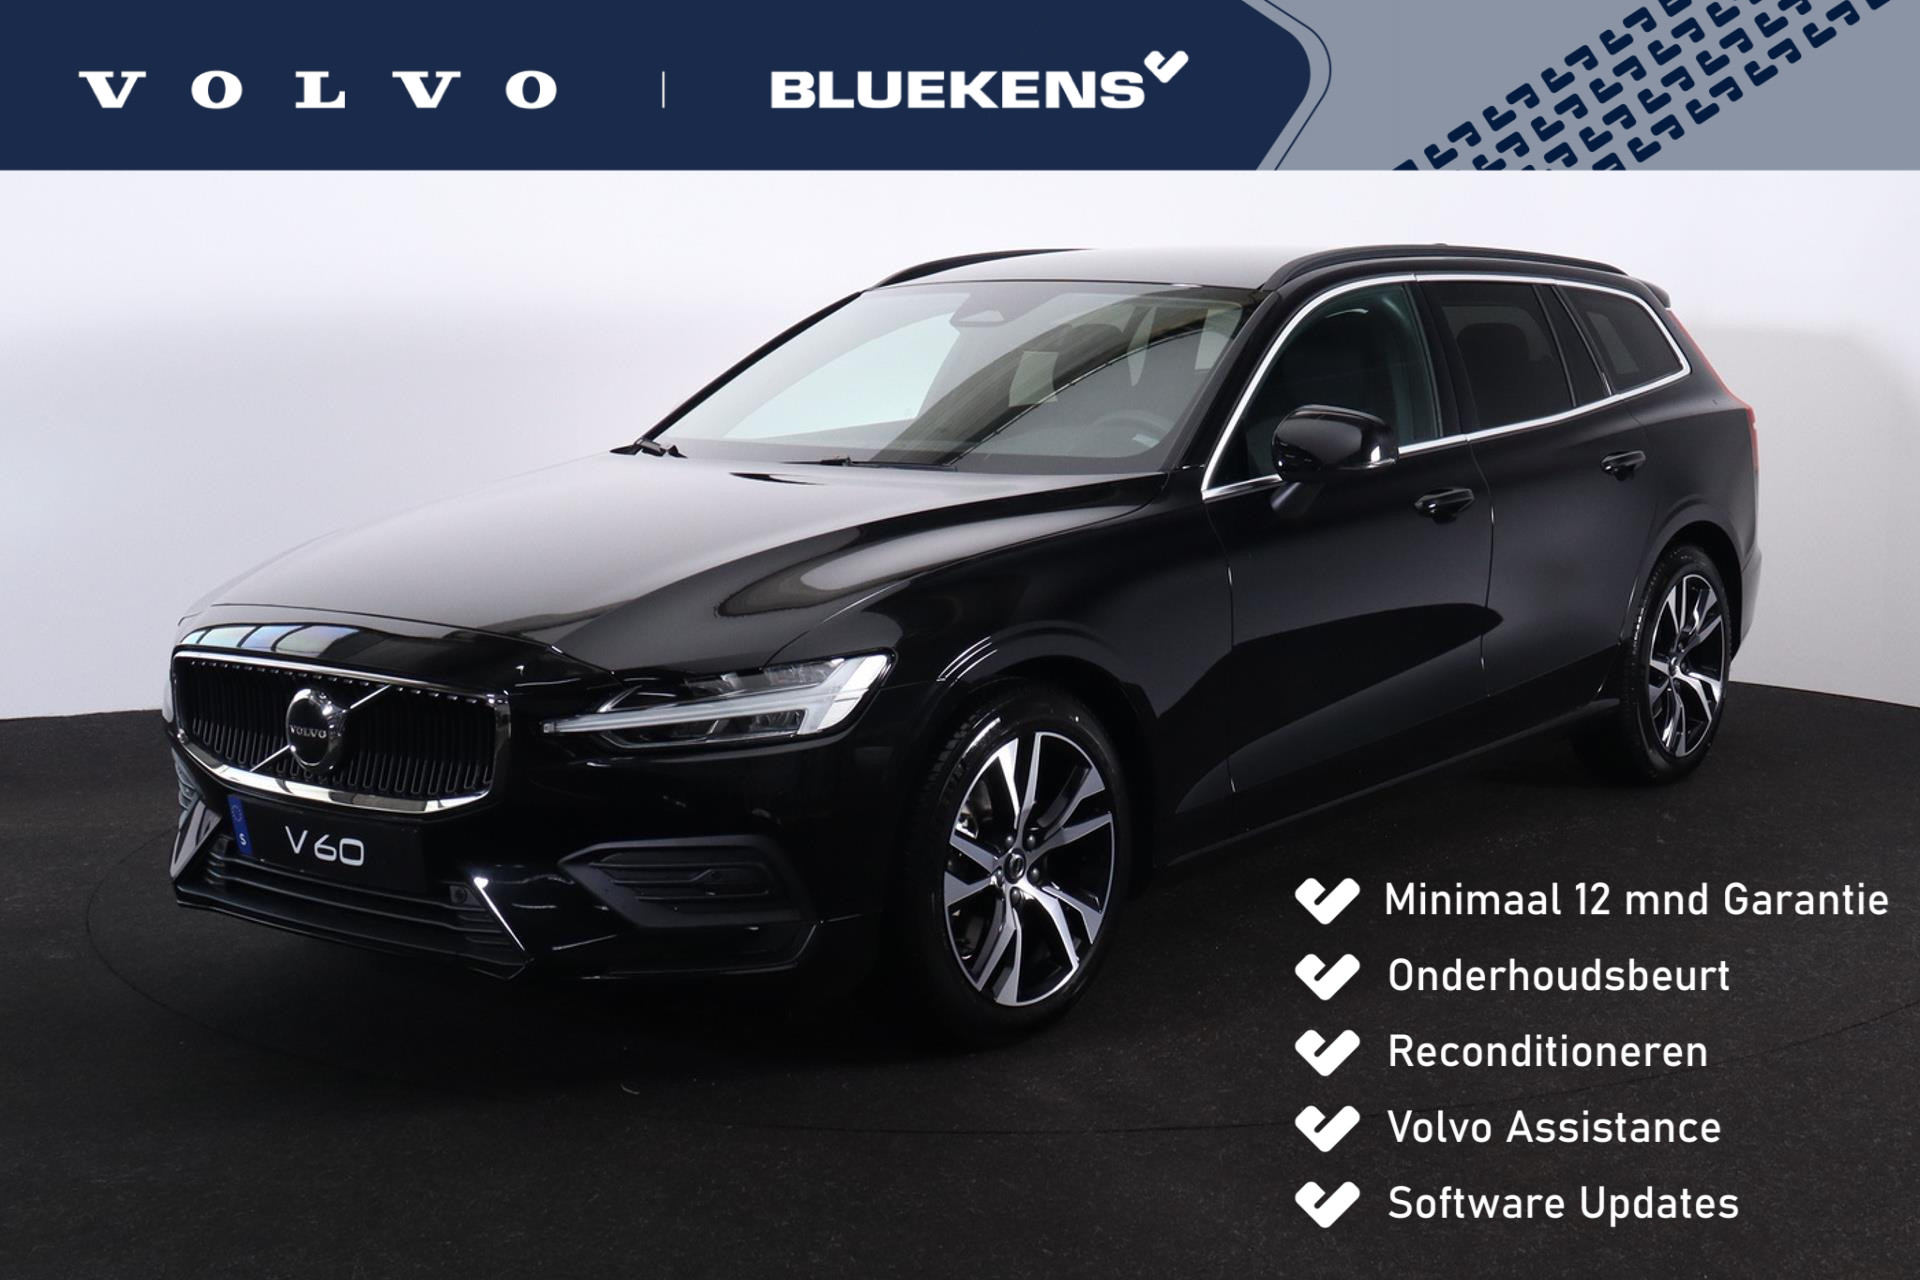 Volvo V60 B3 Core - IntelliSafe Assist & Surround - Parkeercamera achter - Verwarmde voorstoelen, stuur & achterbank - Parkeersensoren voor & achter - Draadloze tel. lader - Extra getint glas - 18' LMV bij viaBOVAG.nl